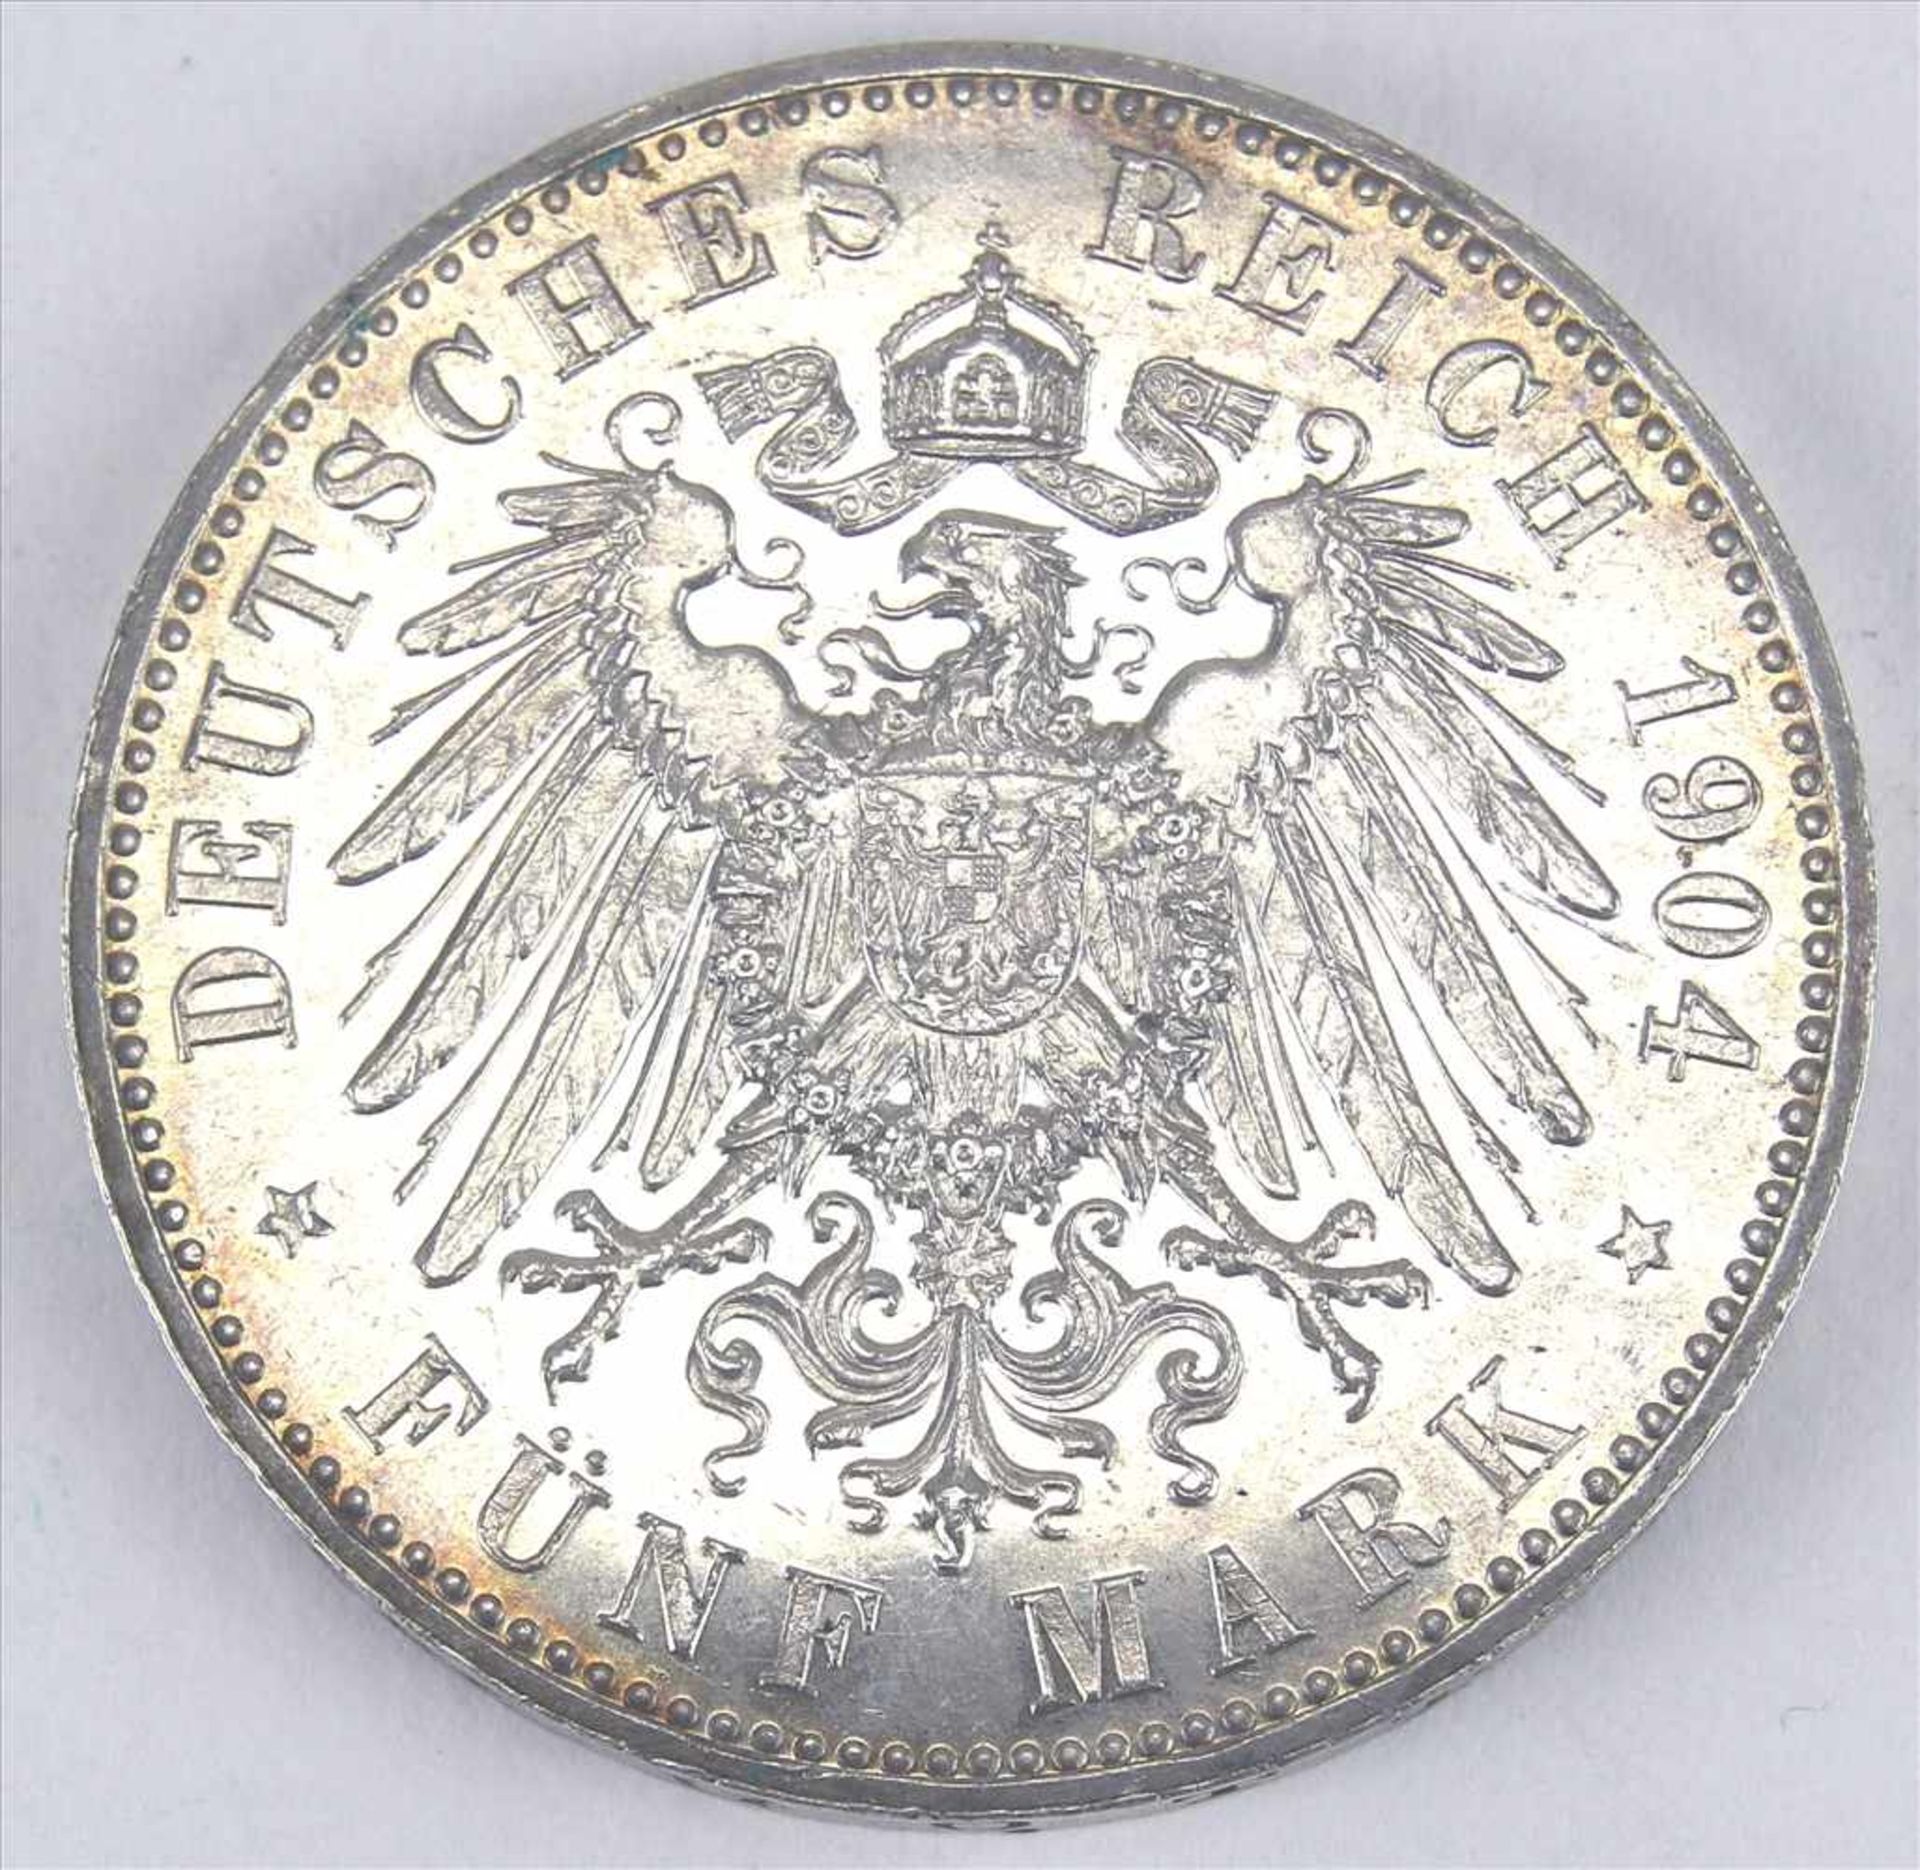 5 Mark MünzeErnst-Ludwig Großherzog von Hessen 1904. Durchmesser ca. 4 cm, Gewicht ca. 27,77 g. - Bild 2 aus 3